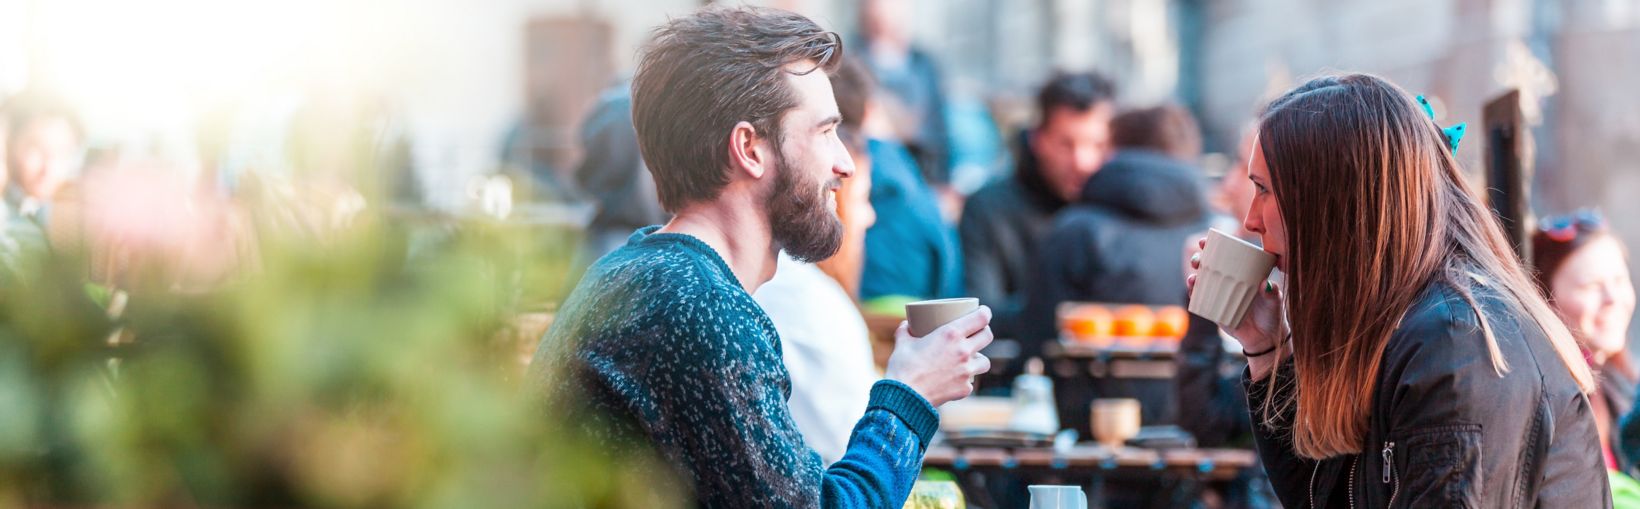 Ung kvinne med langt, brunt hår og en mannlig venn drikker kaffe ved et bord utenfor en kafe på en klar og kjølig dag